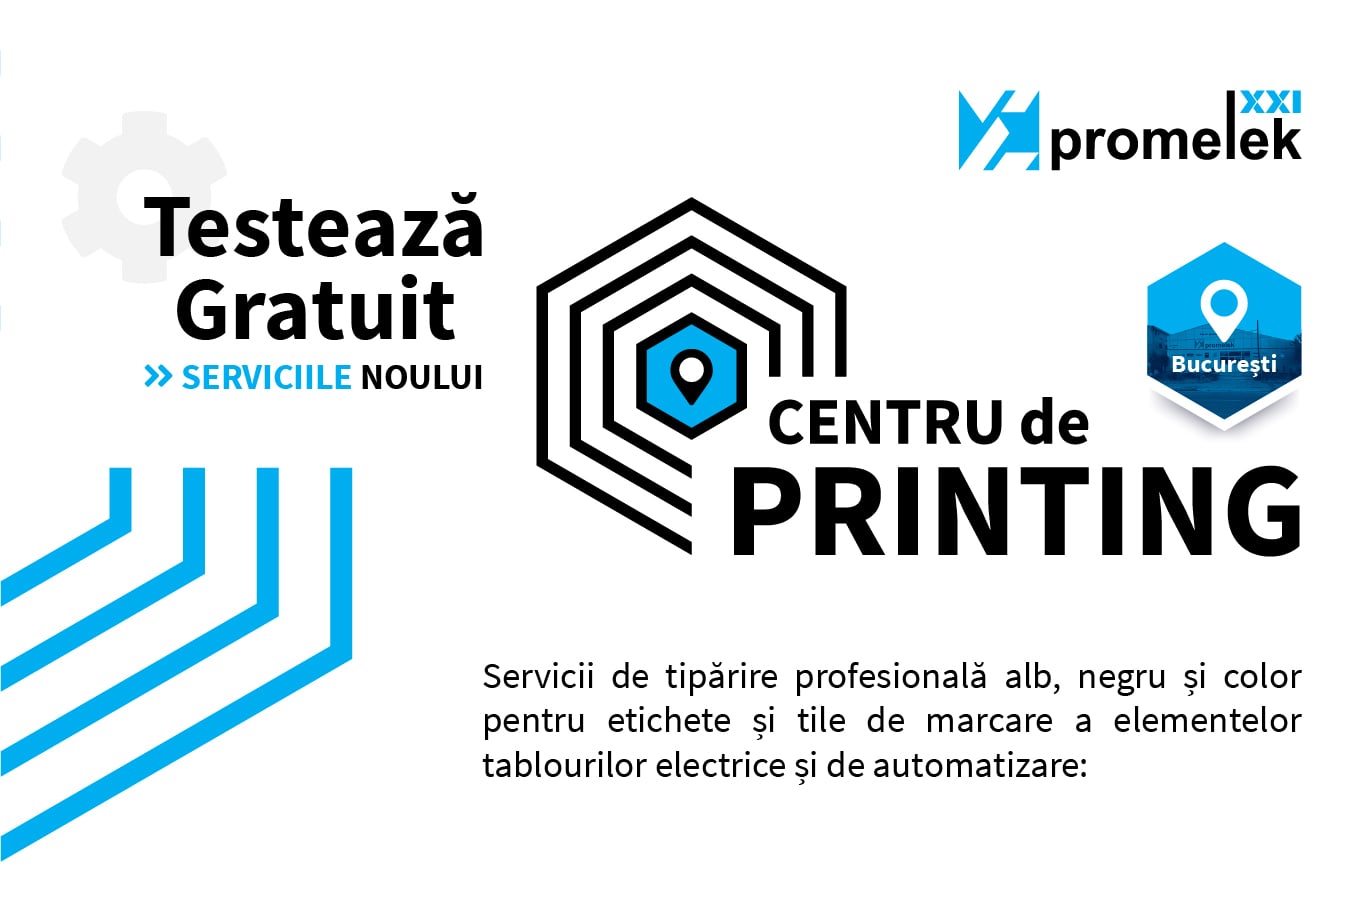 Centru de printing Promelek XXI - testează gratuit serviciile noastre